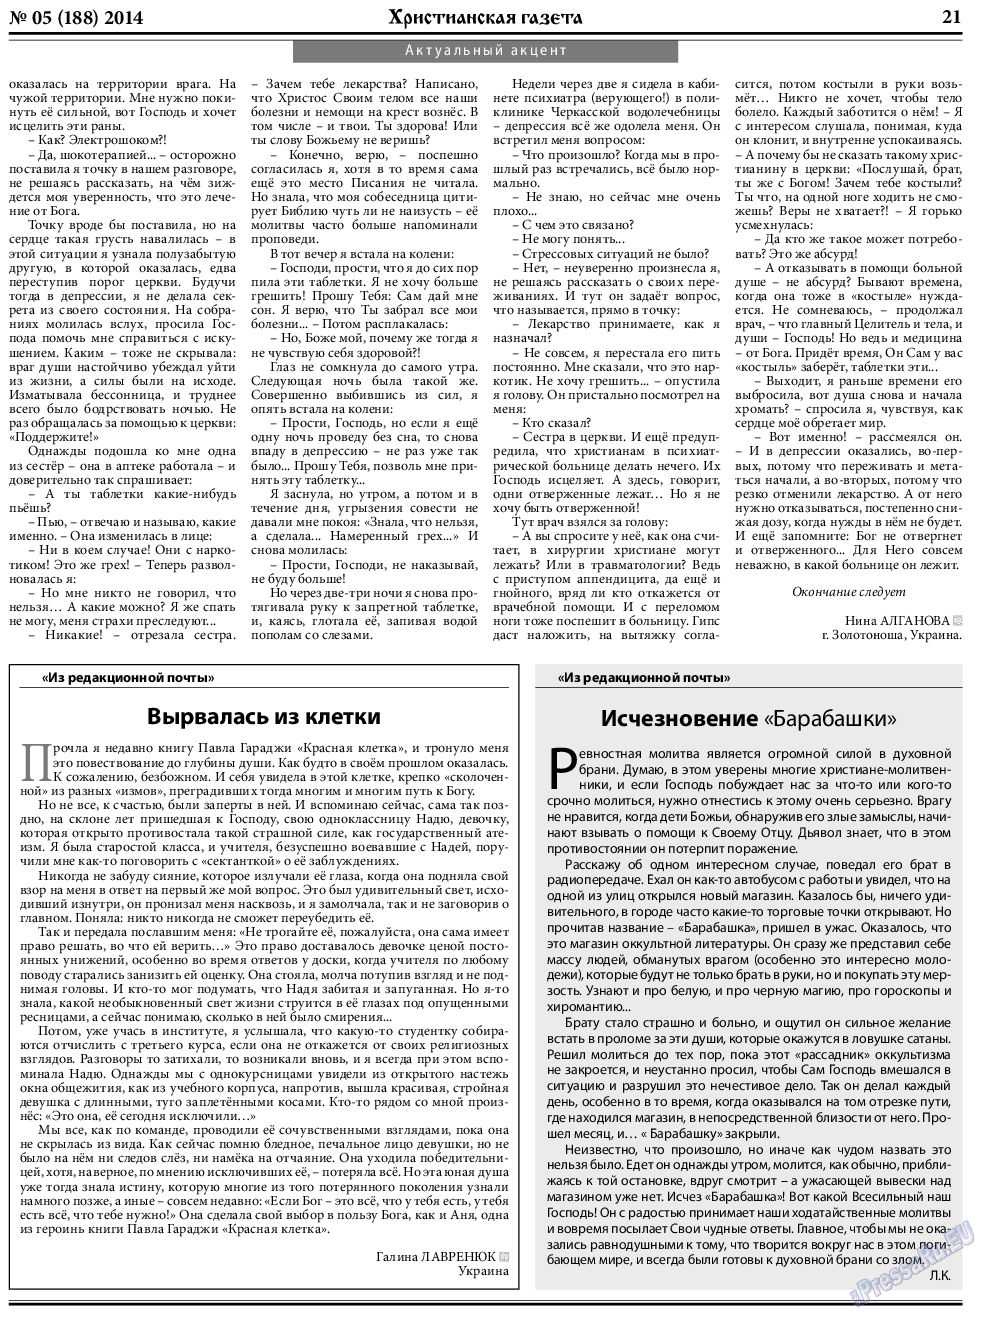 Христианская газета, газета. 2014 №5 стр.29